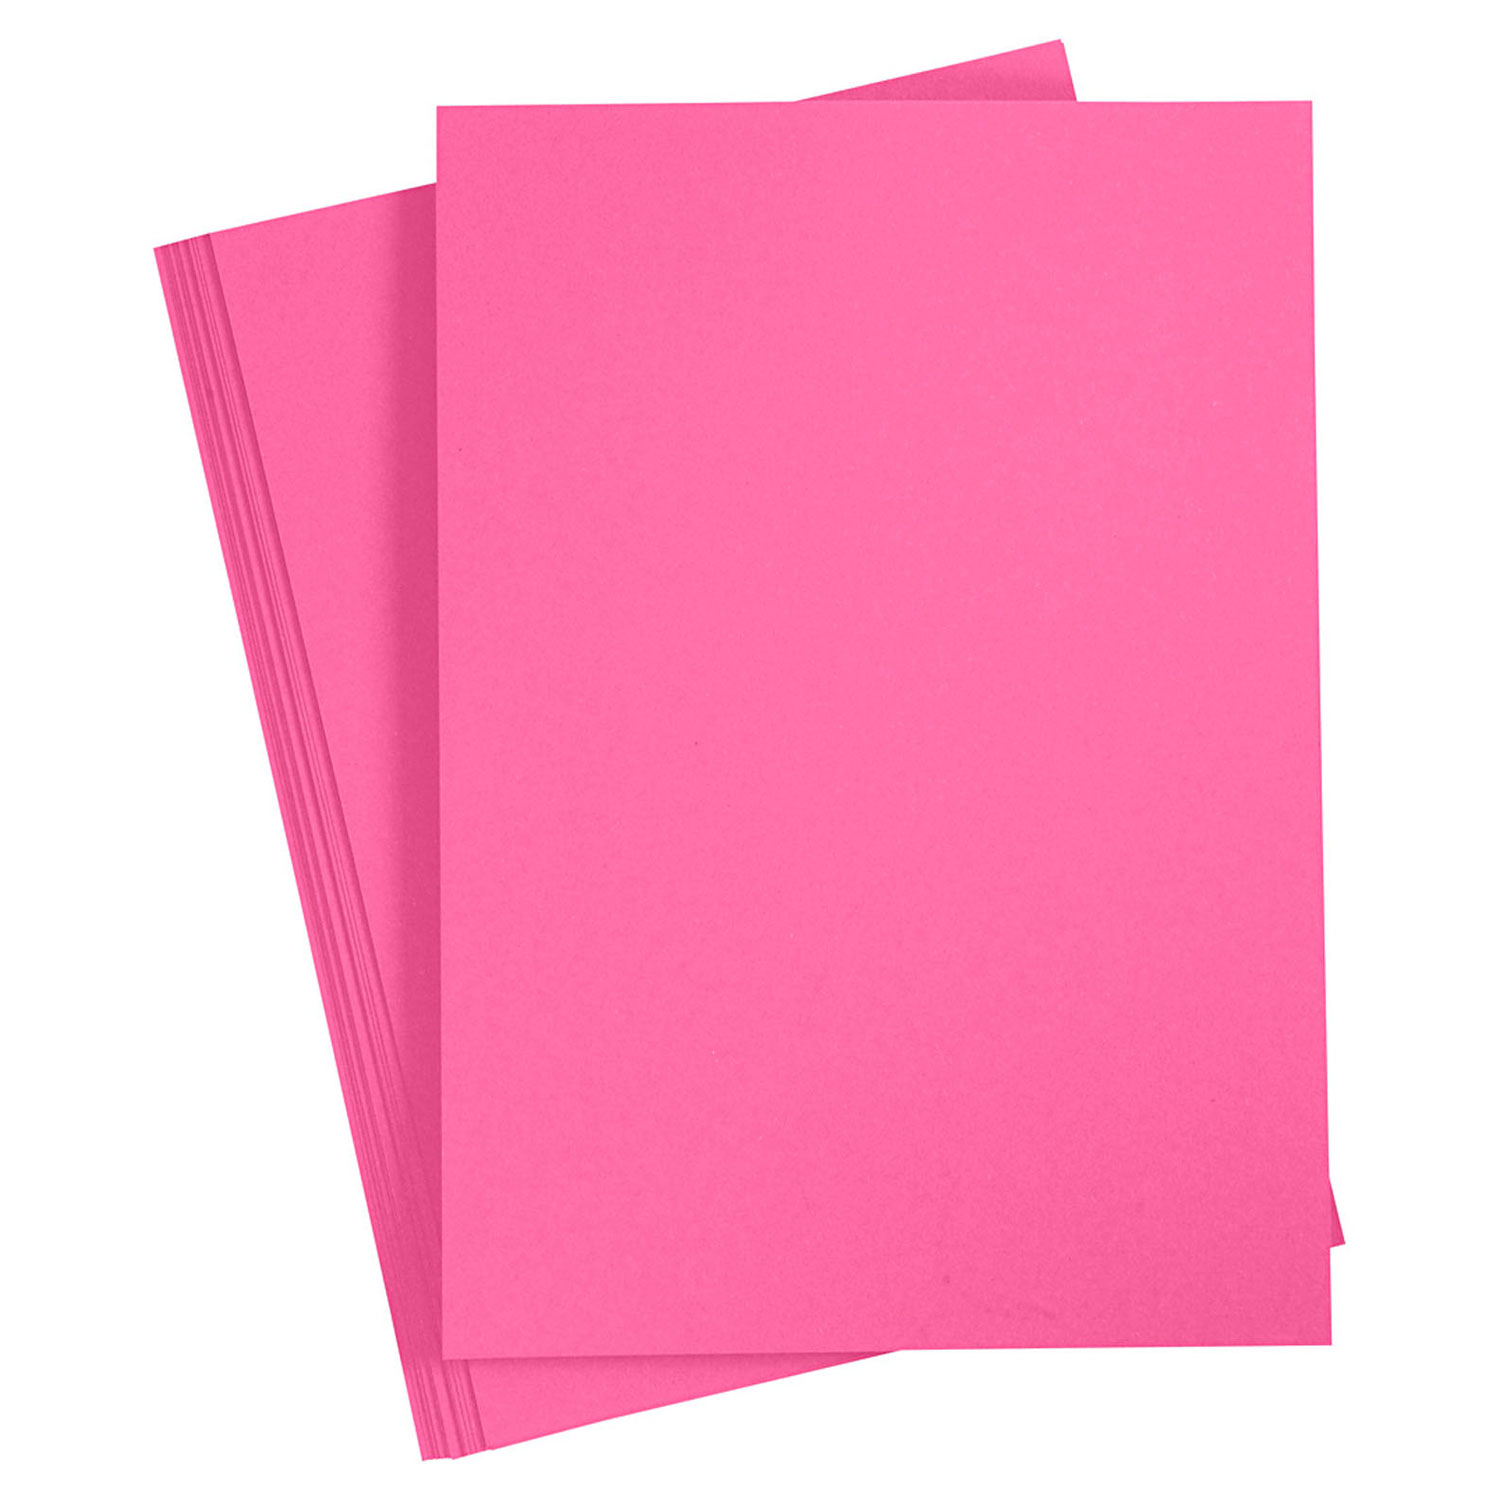 Matrix gelijkheid vertraging Gekleurd Karton Roze A4, 20 vel online kopen? | Lobbes Speelgoed